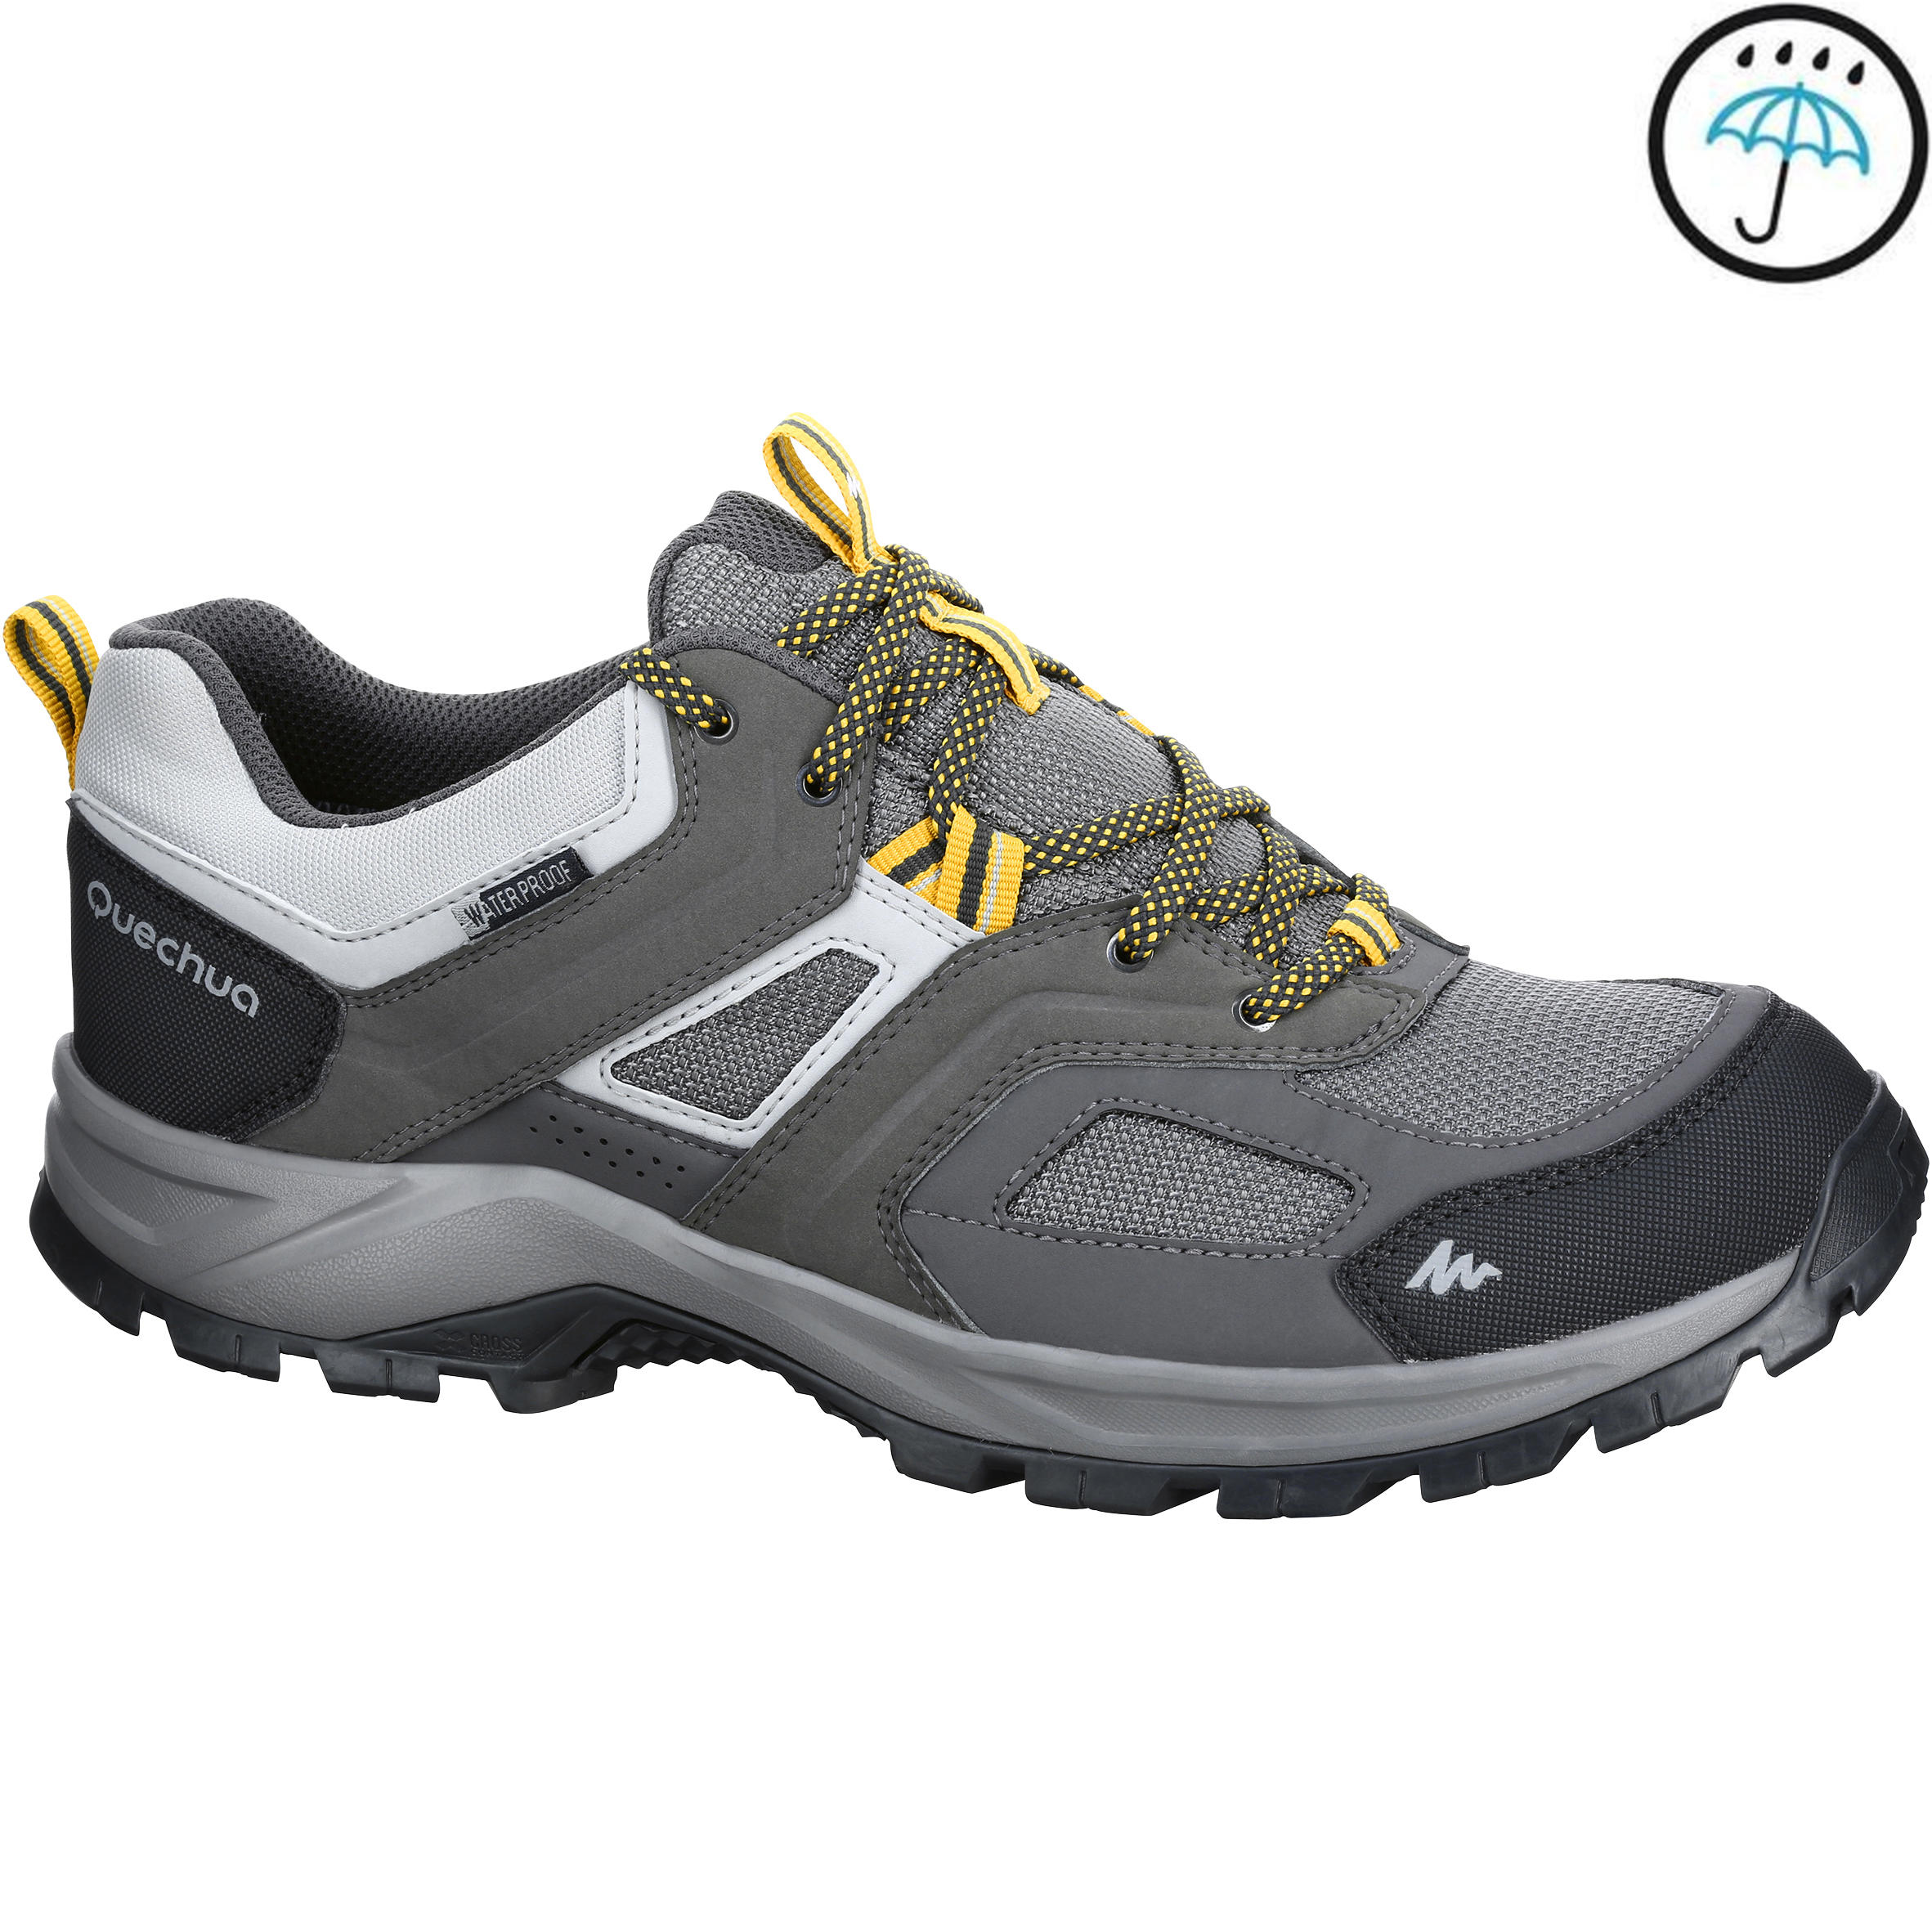 QUECHUA MH100 waterproof Men's Hiking shoes Grey Yellow